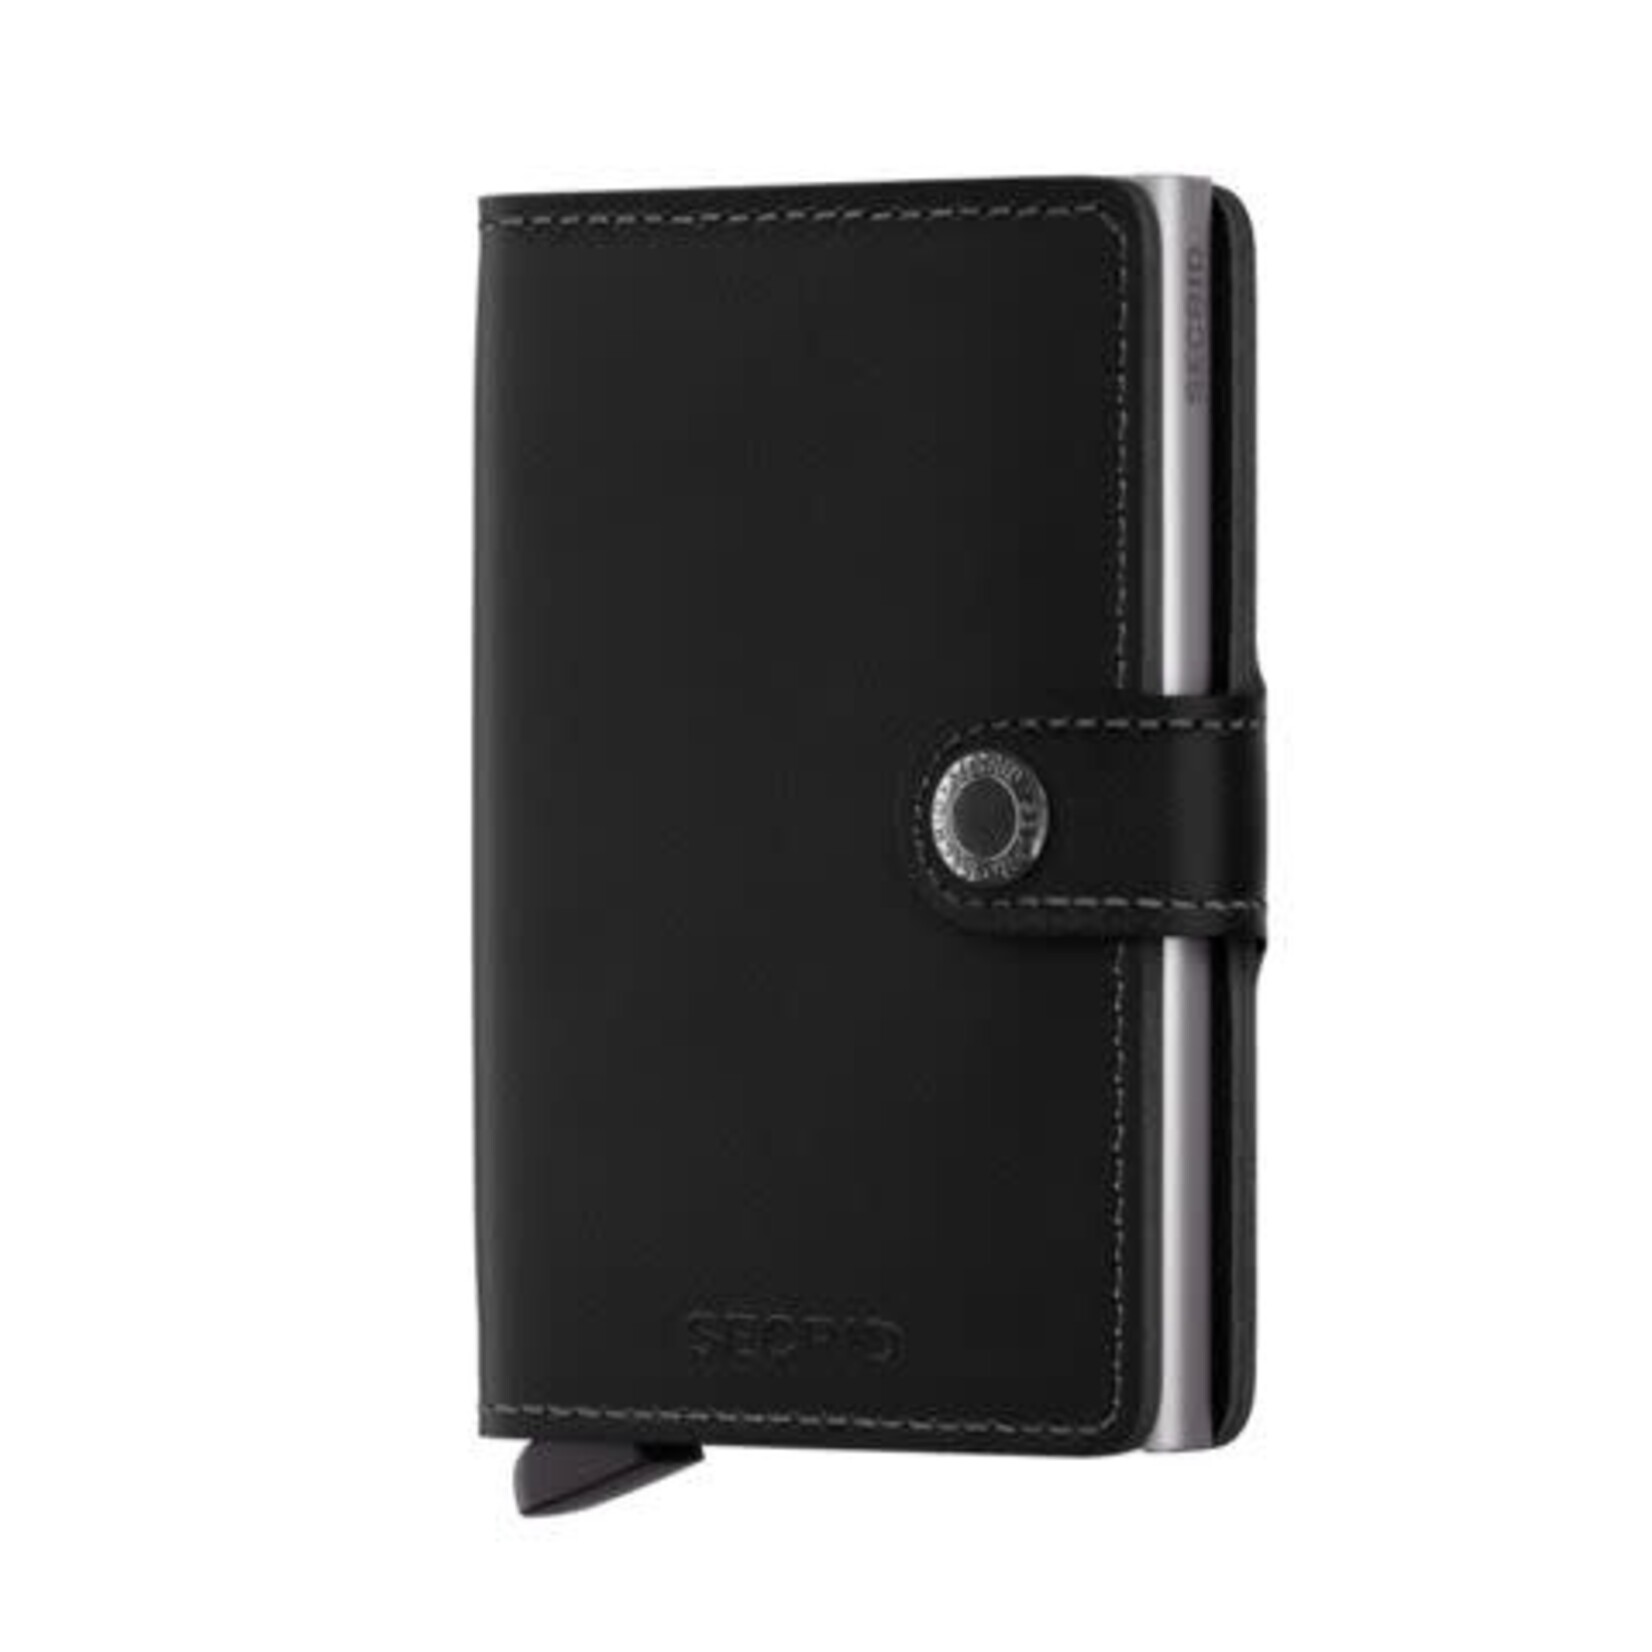 Secrid wallet SECRID Miniwallet Original Black